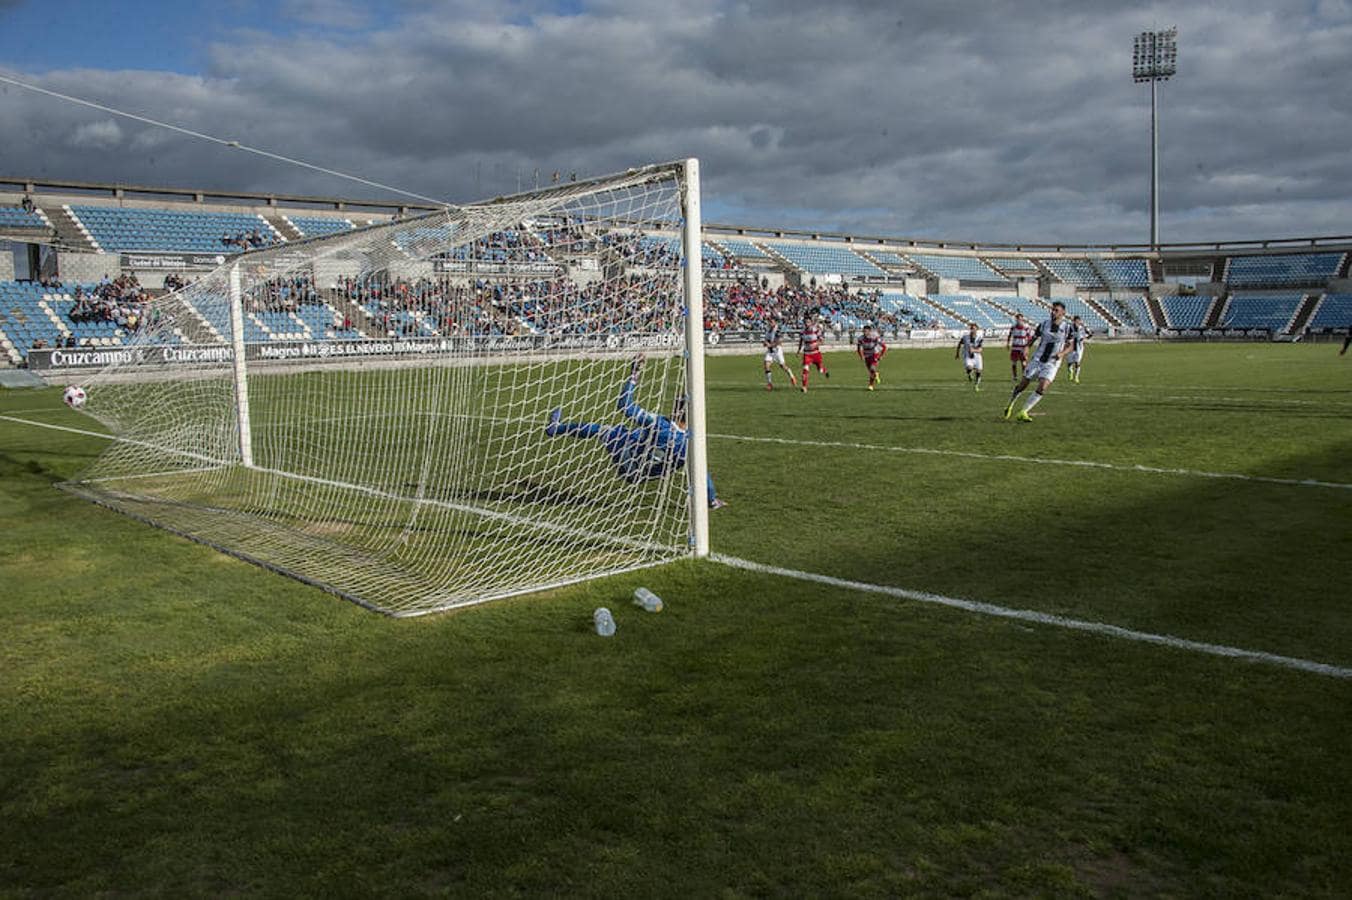 El Badajoz defiende su escasa renta de penalti en un final agónico con uno menos por la expulsión de Petcoff